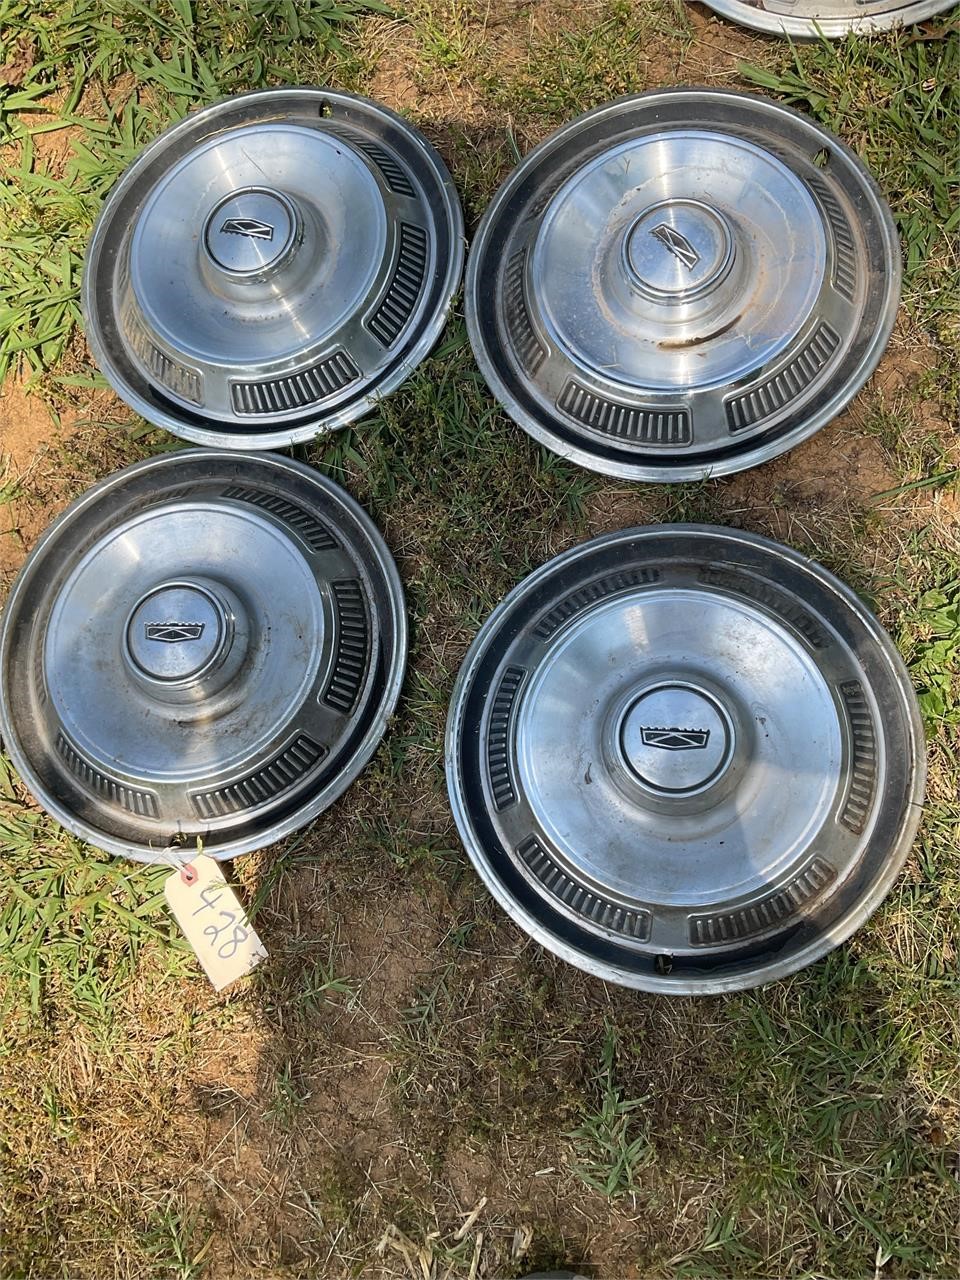 4 hub caps